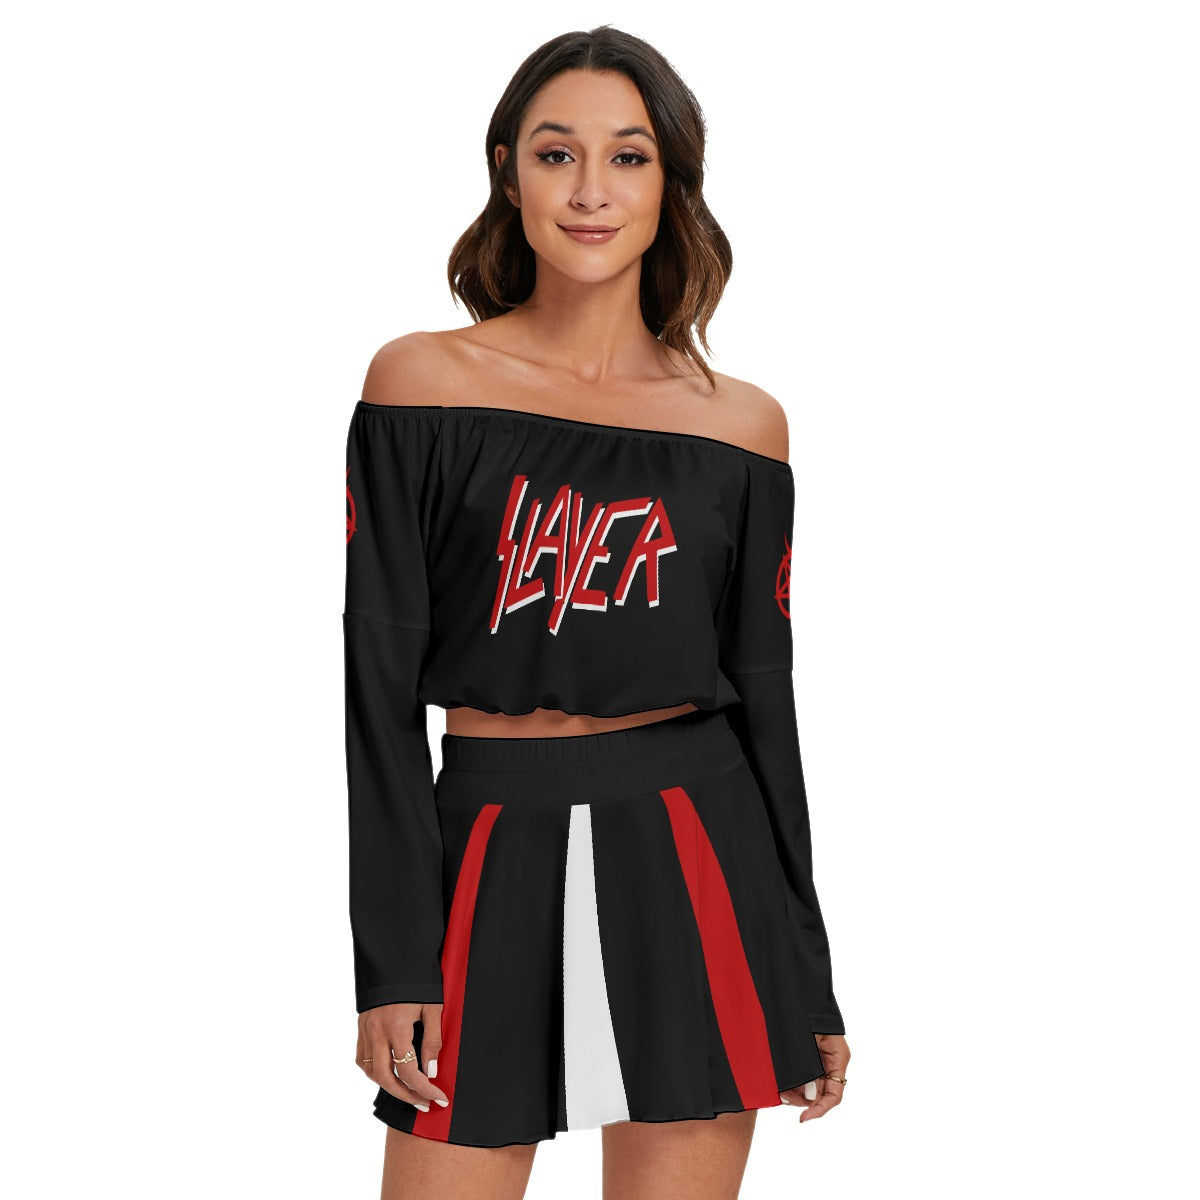 Slayer Off-shoulder top & Skirt Set